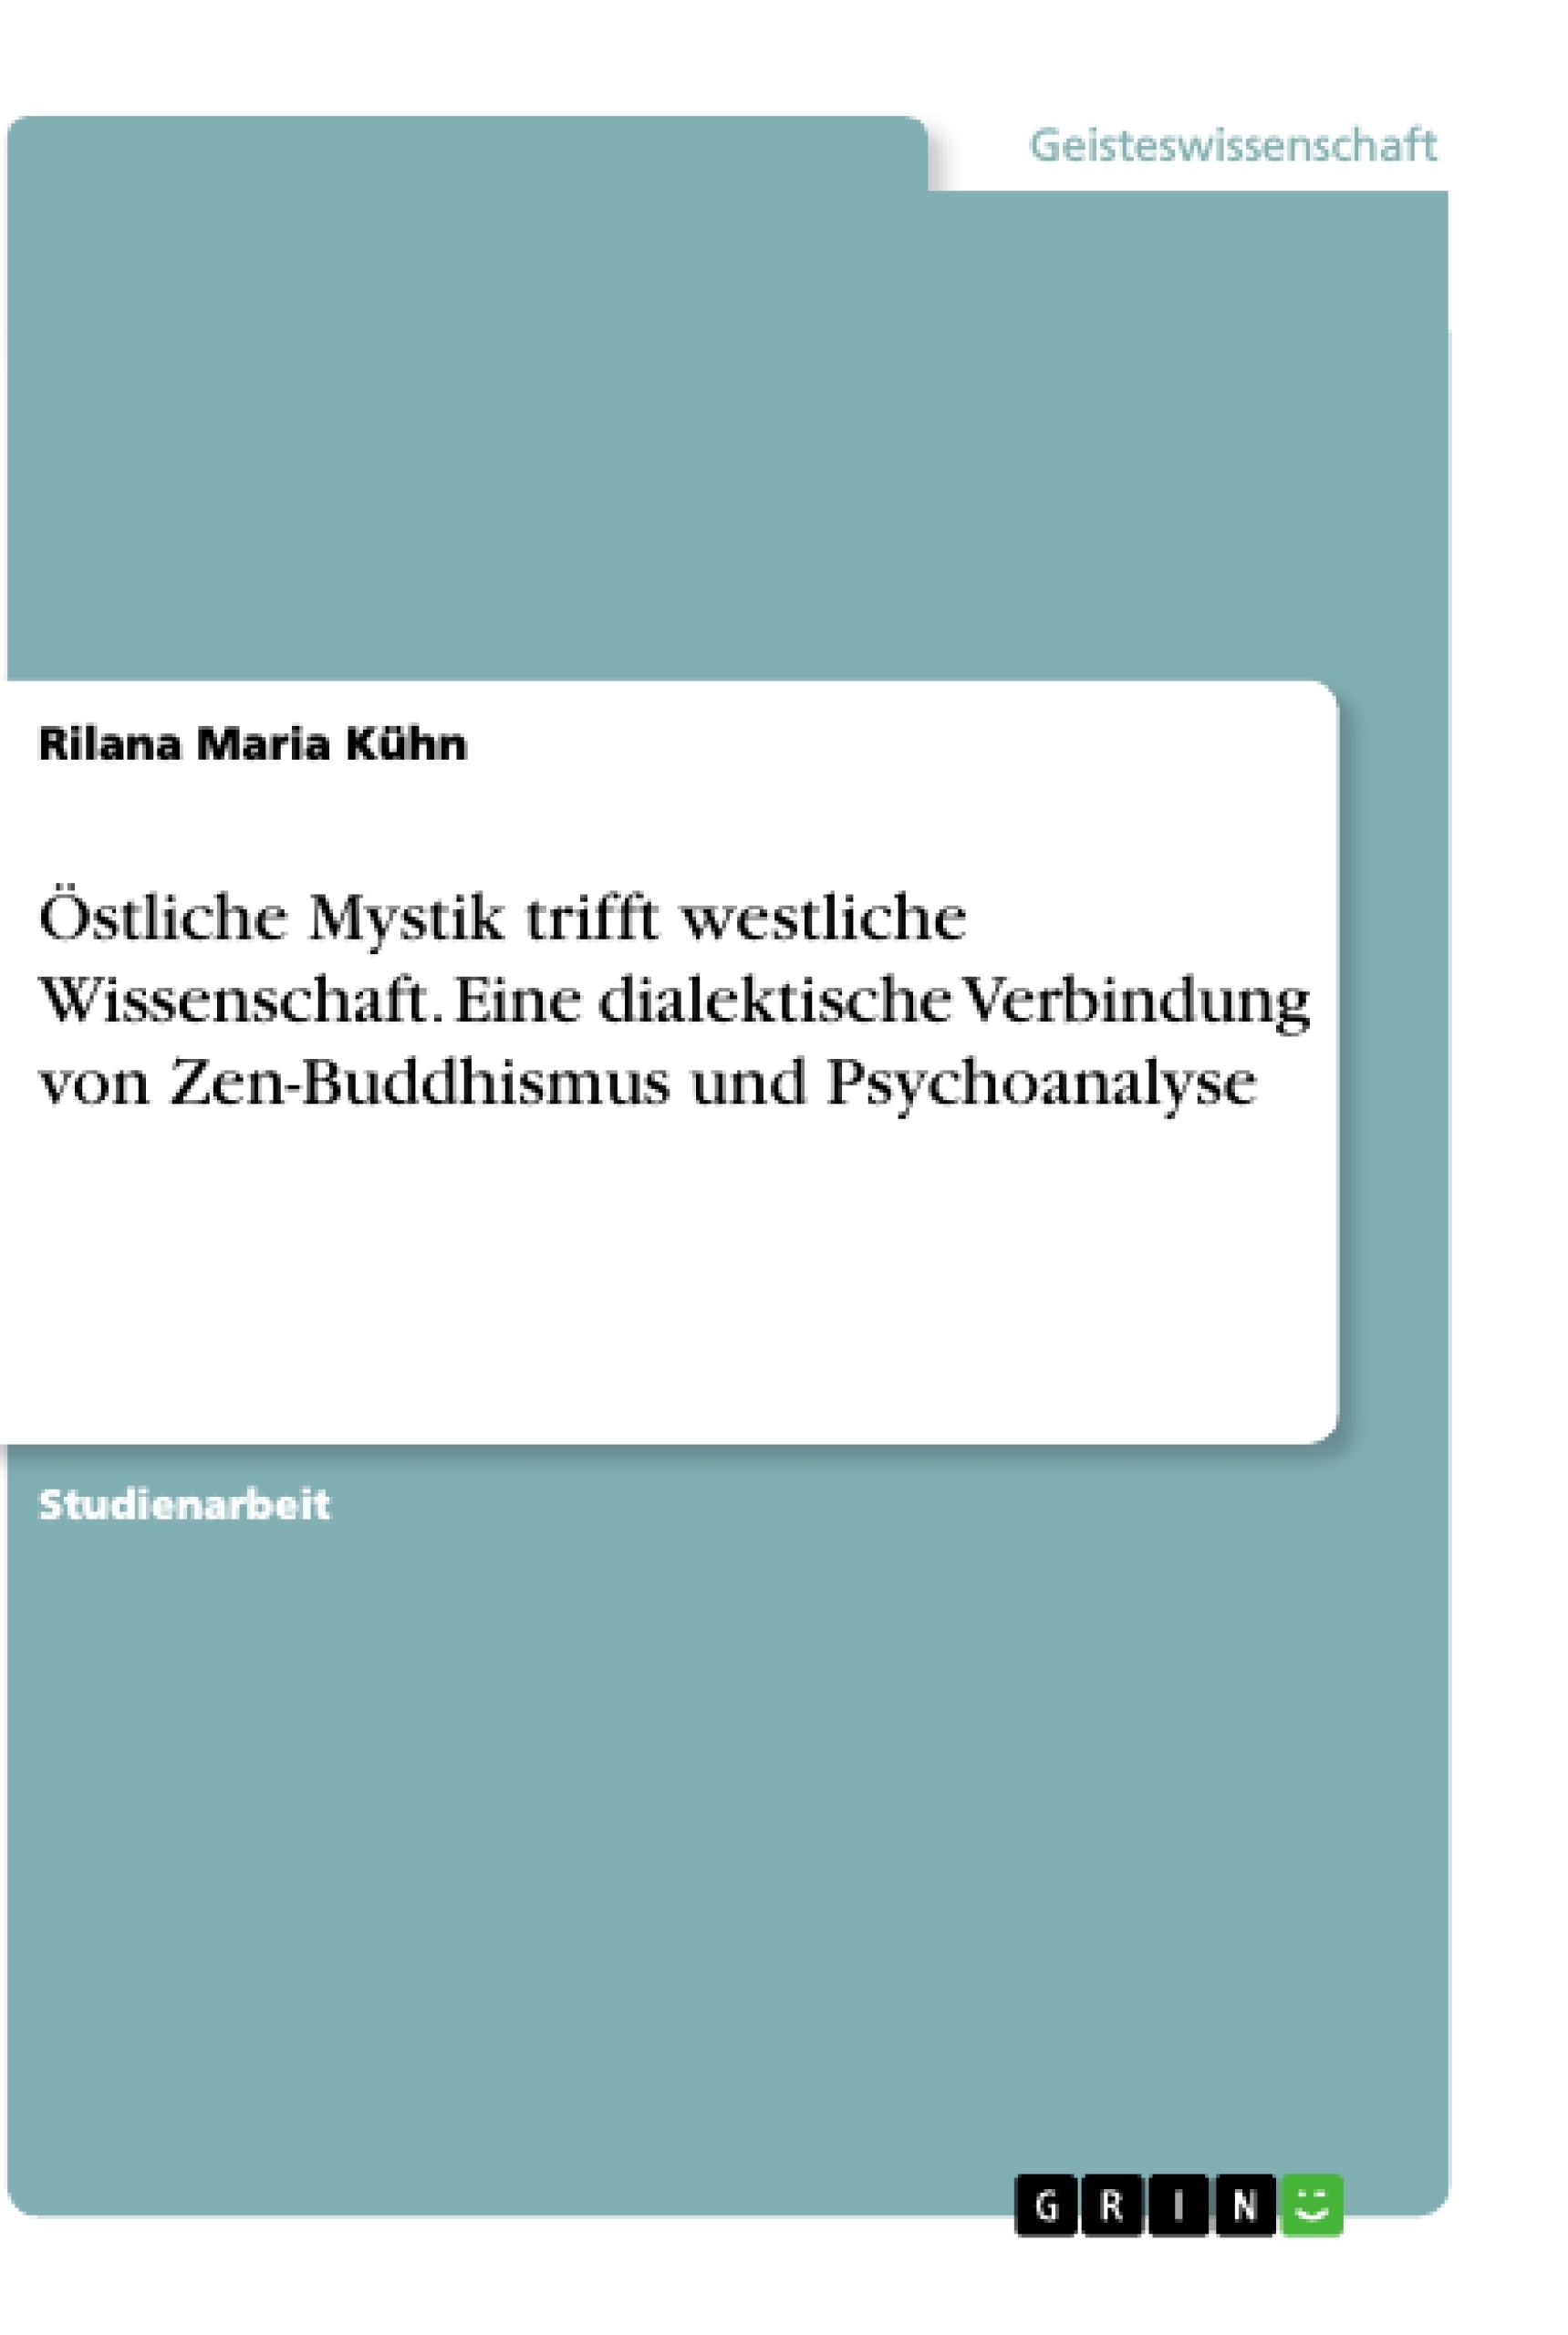 Title: Östliche Mystik trifft westliche Wissenschaft. Eine dialektische Verbindung von Zen-Buddhismus und Psychoanalyse